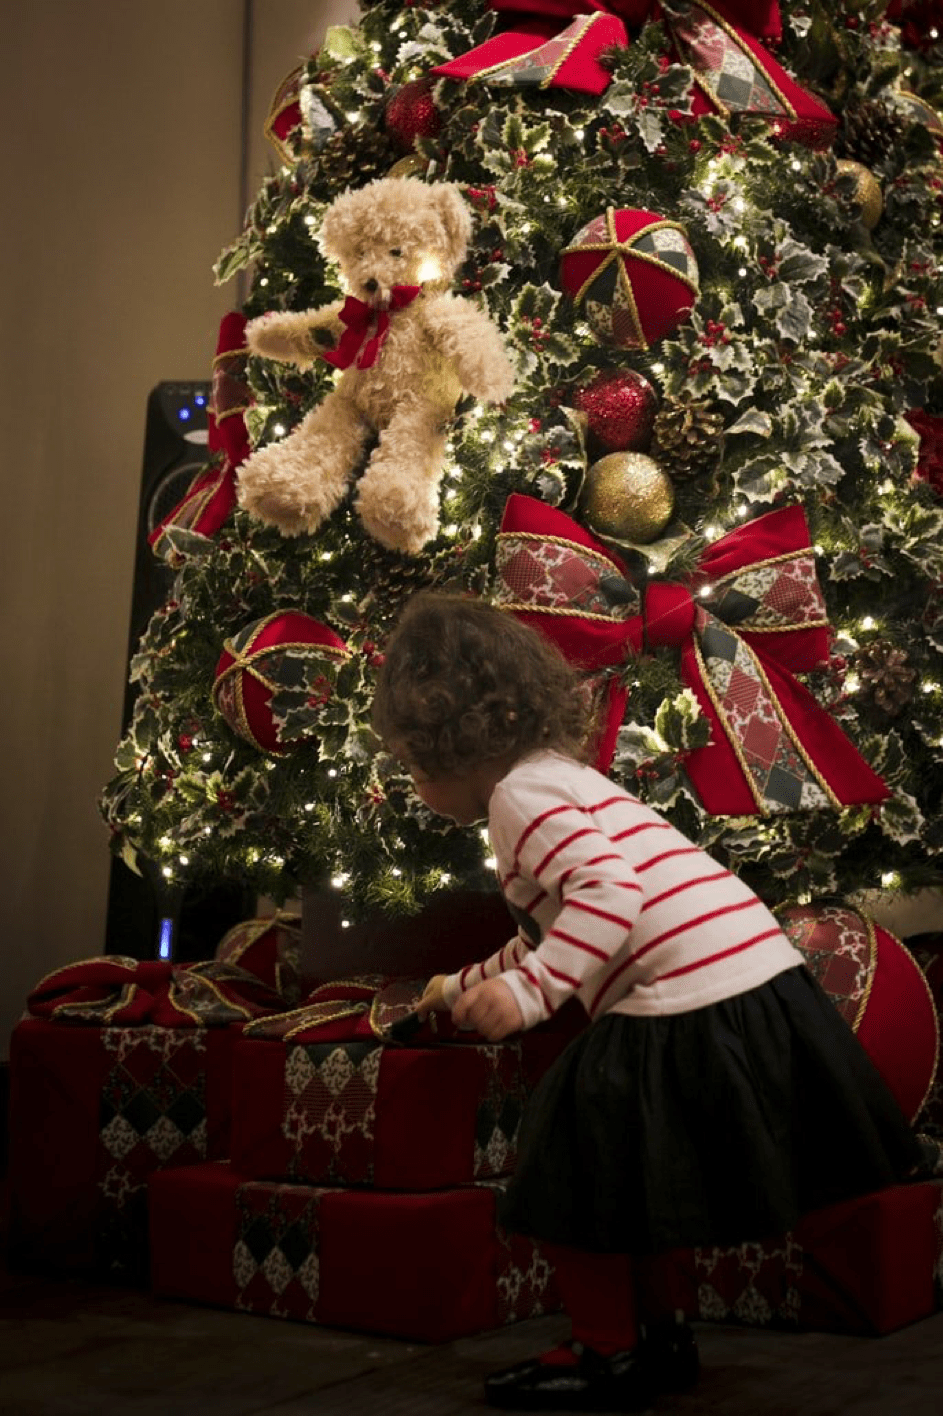 Emma bekam den Teddy zu Weihnachten, als sie 2 wurde. | Quelle: Unsplash